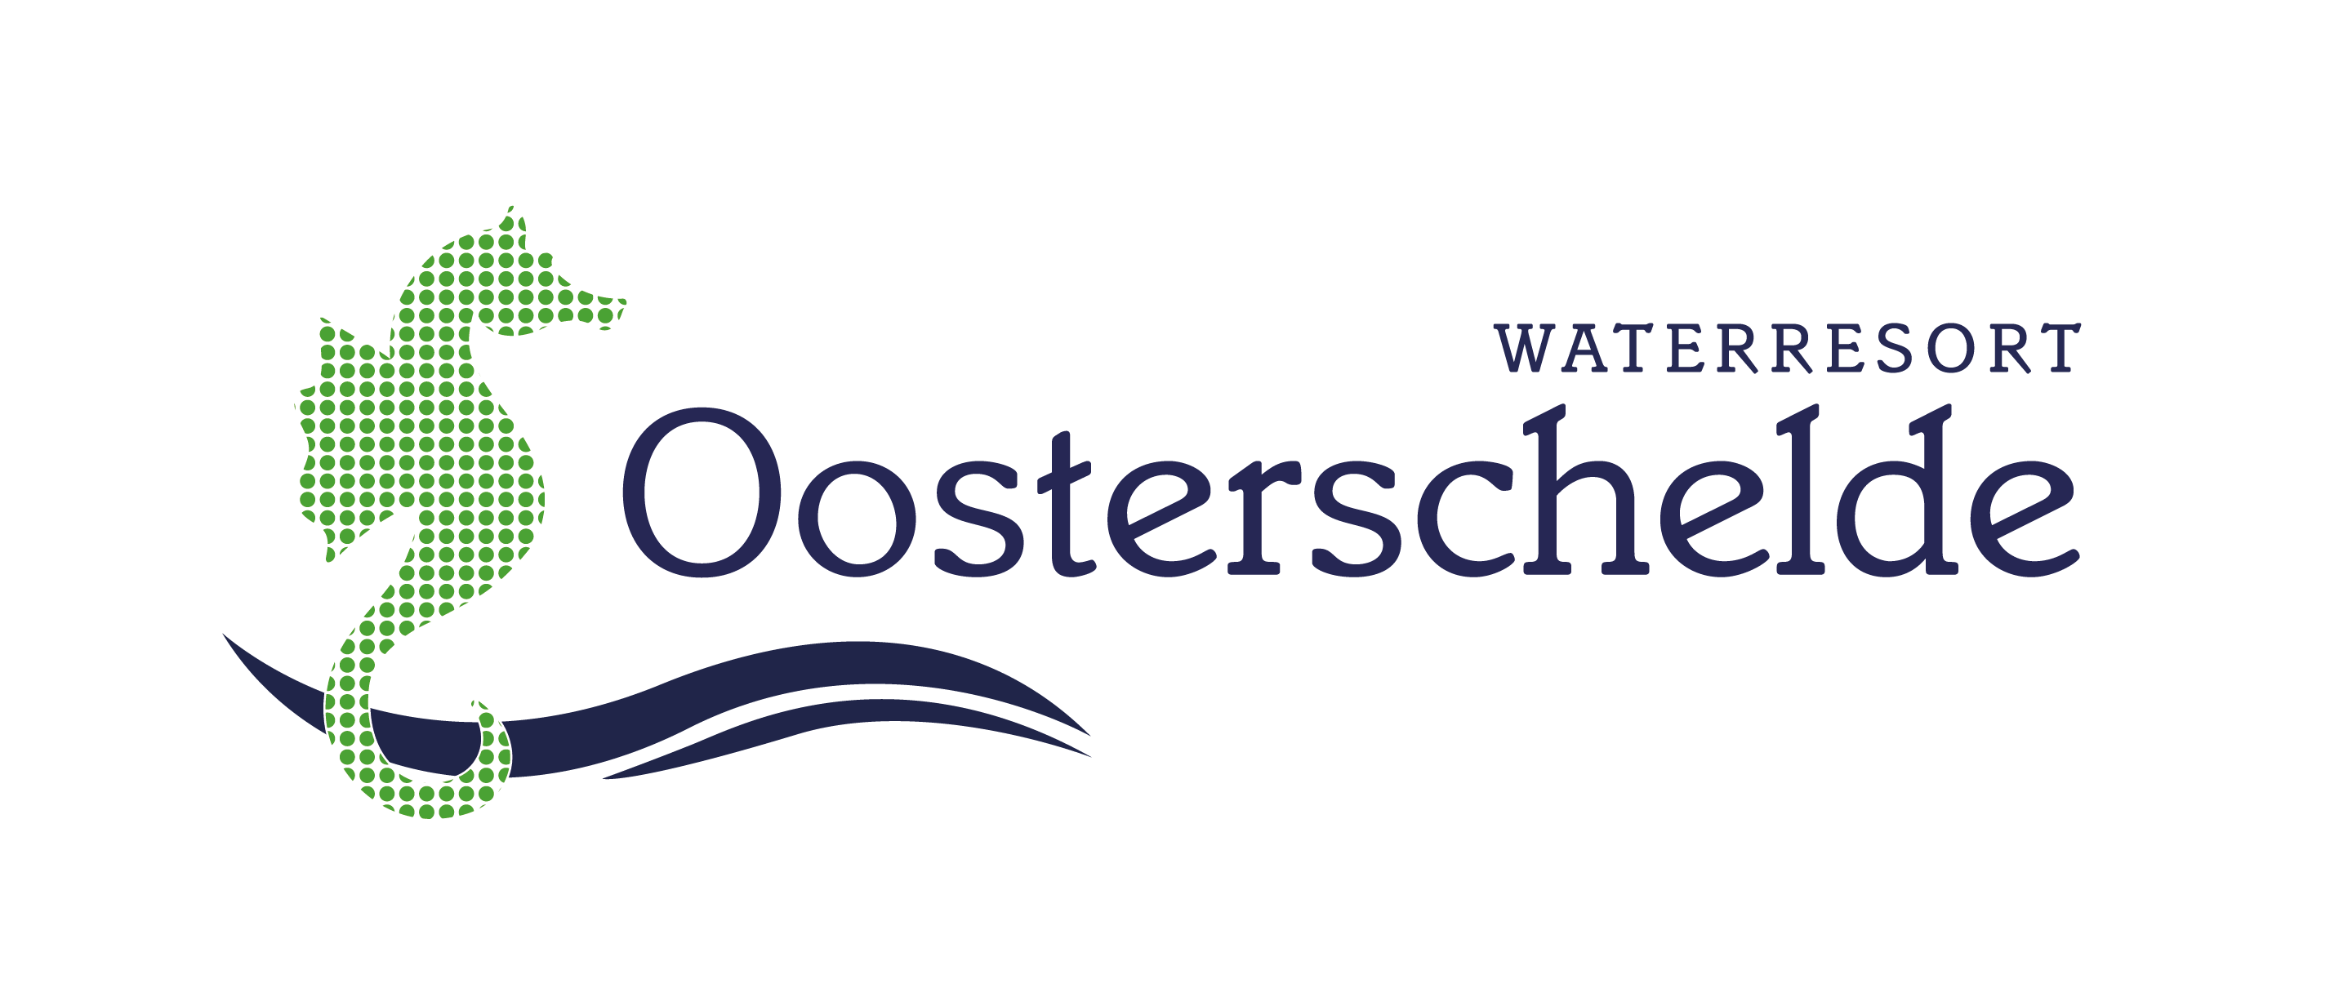 Waterresortoosterschelde.nl